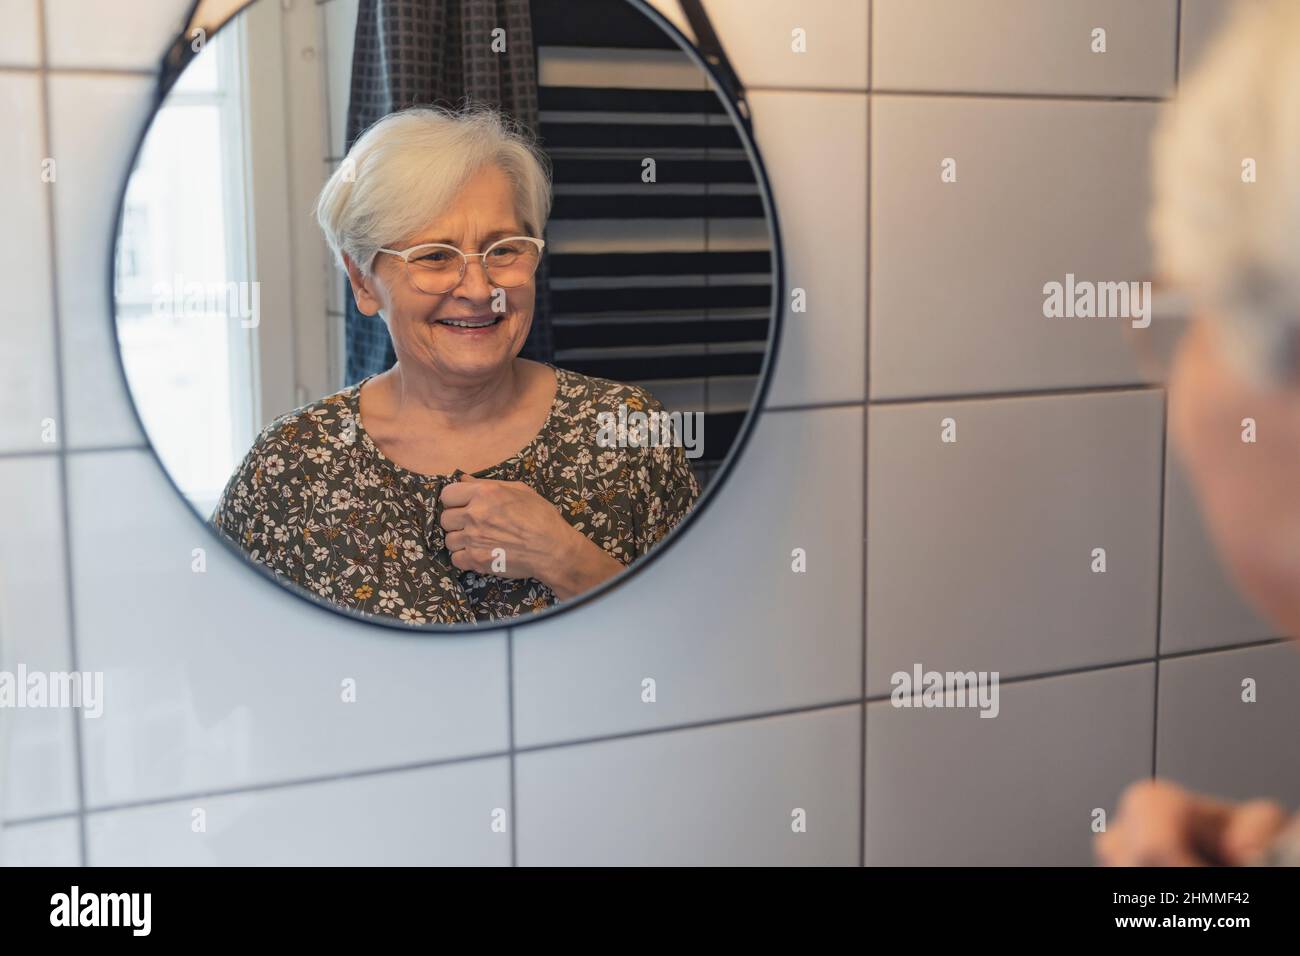 vecchia signora caucasica dai capelli grigi che guarda se stessa nello specchio e sorride . Foto di alta qualità Foto Stock